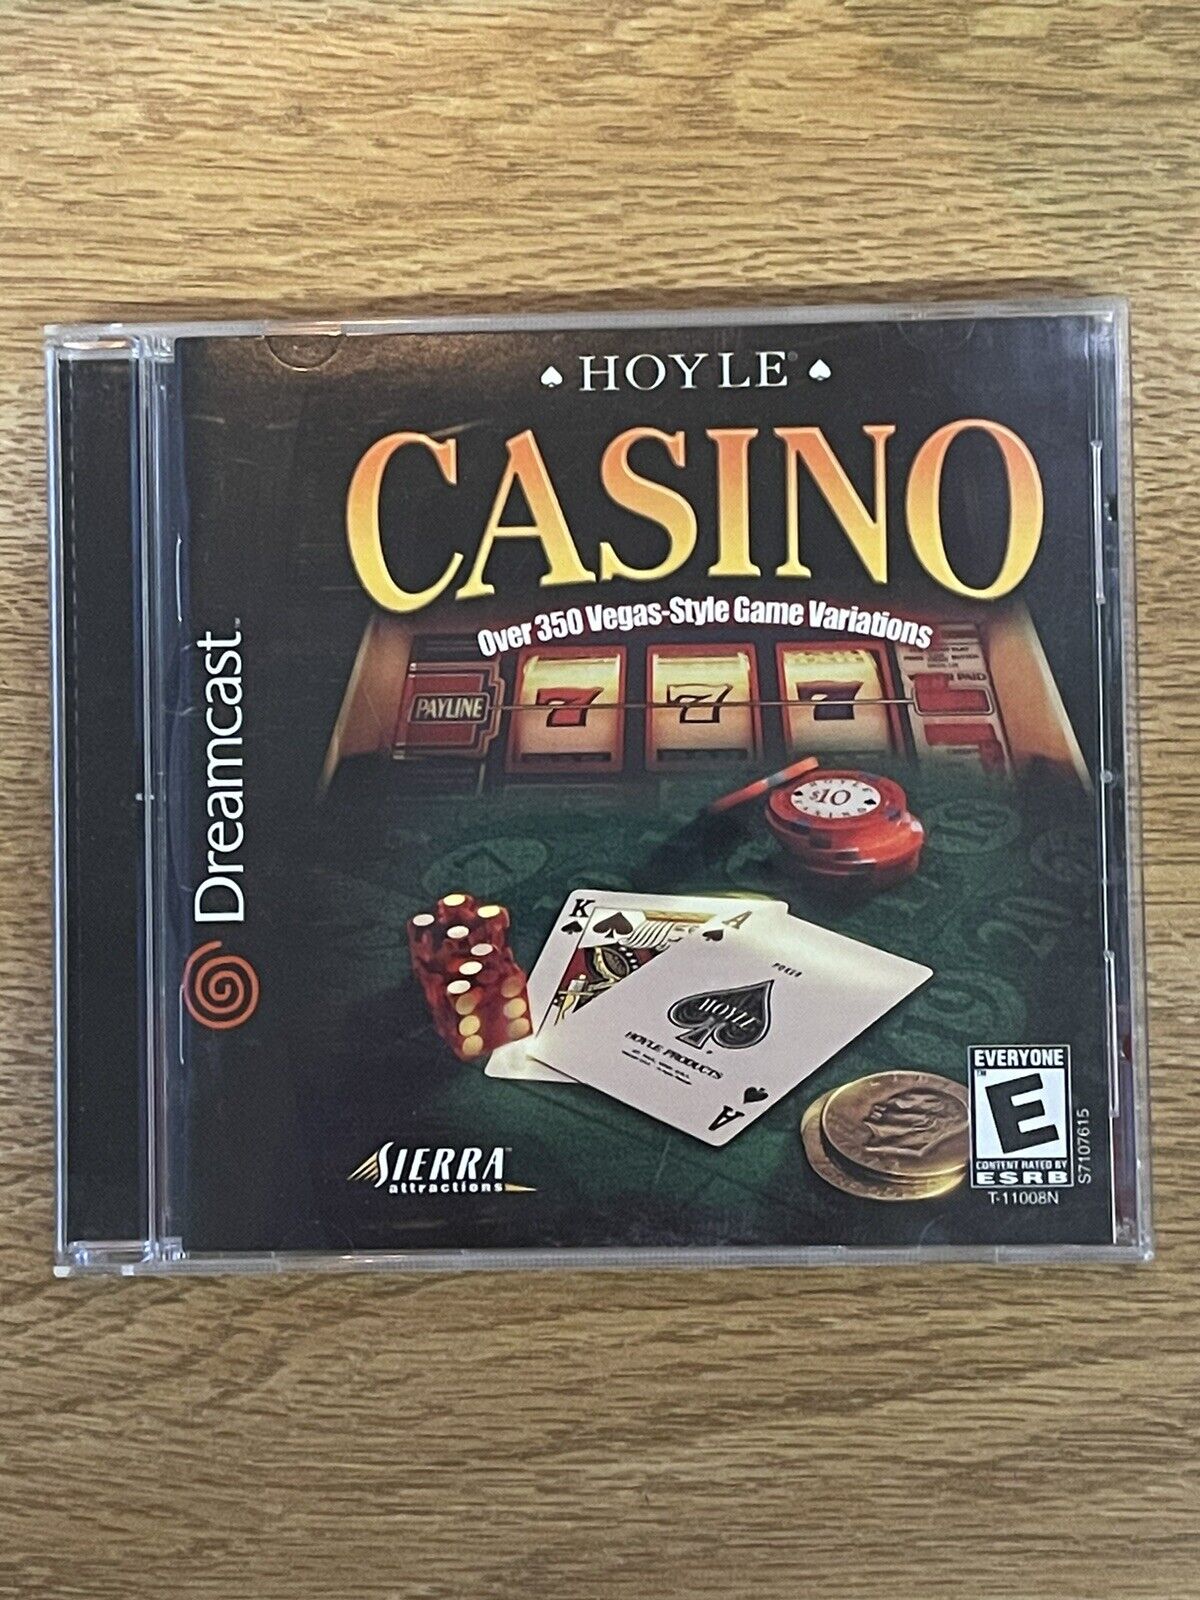 Hoyle Casino (Sega Dreamcast, 2000) - Complete!